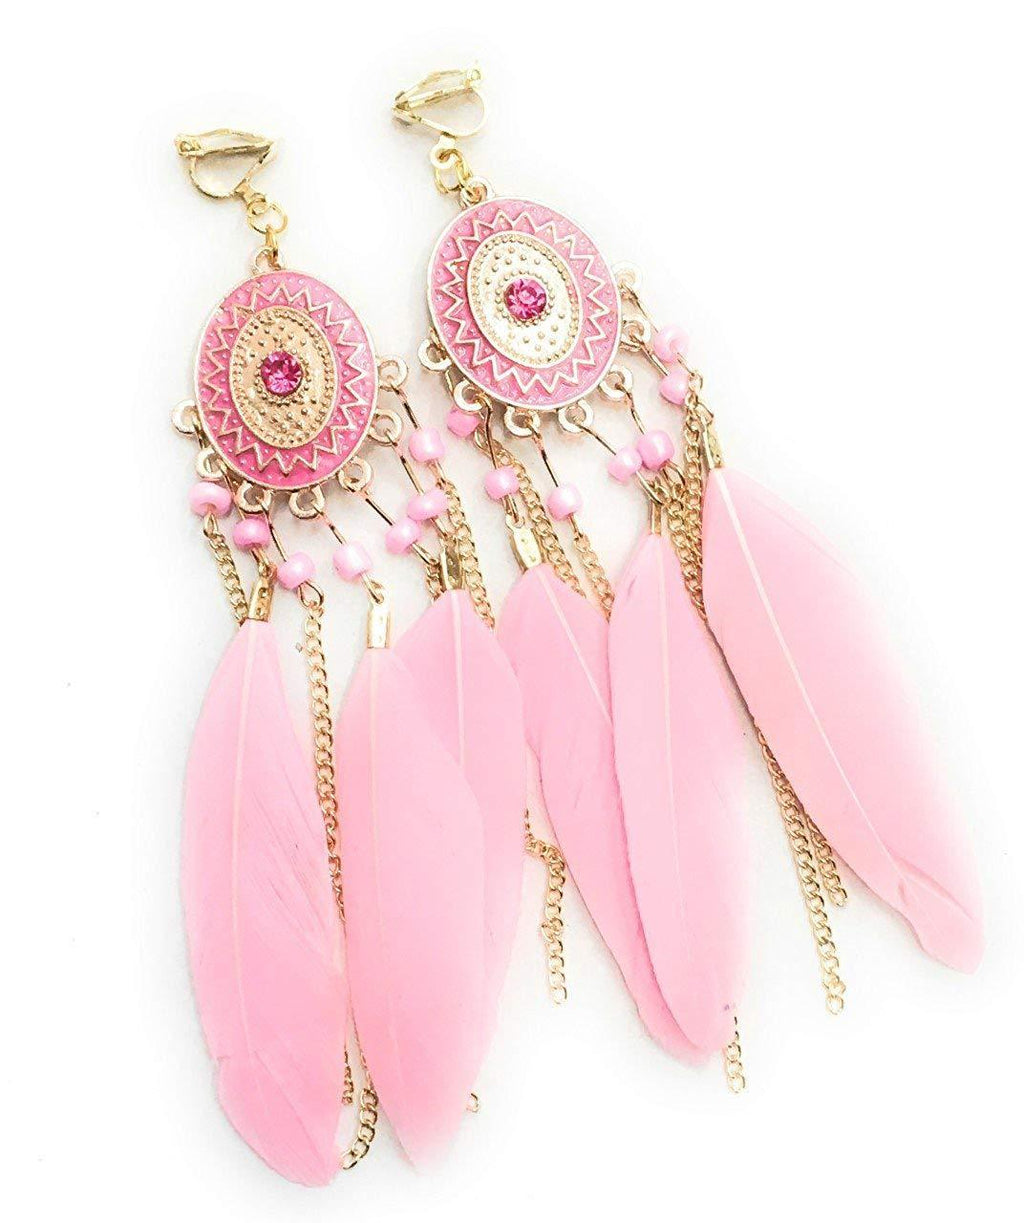 Baby Pink Feather Chandelier Earrings Gold Gypsy Boho Tribal Tassel - Pierced or Clip On